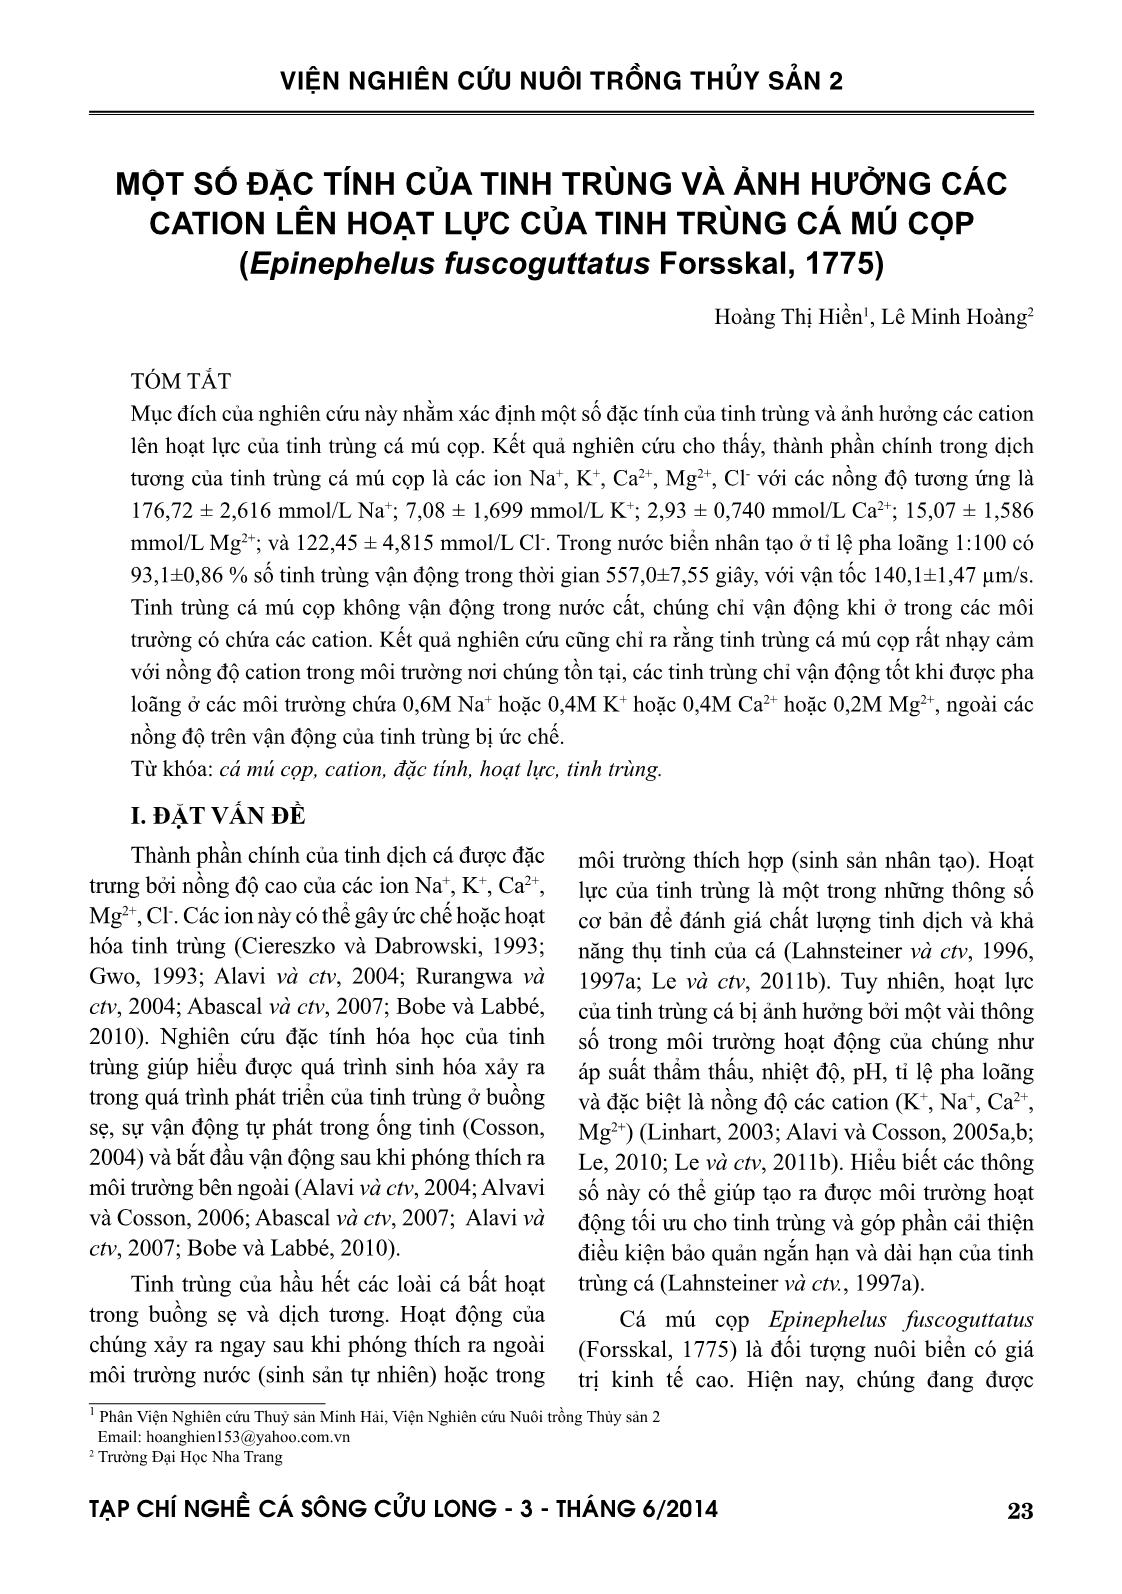 Một số đặc tính của tinh trùng và ảnh hưởng các cation lên hoạt lực của tinh trùng cá mú cọp (Epinephelus fuscoguttatus Forsskal, 1775) trang 1